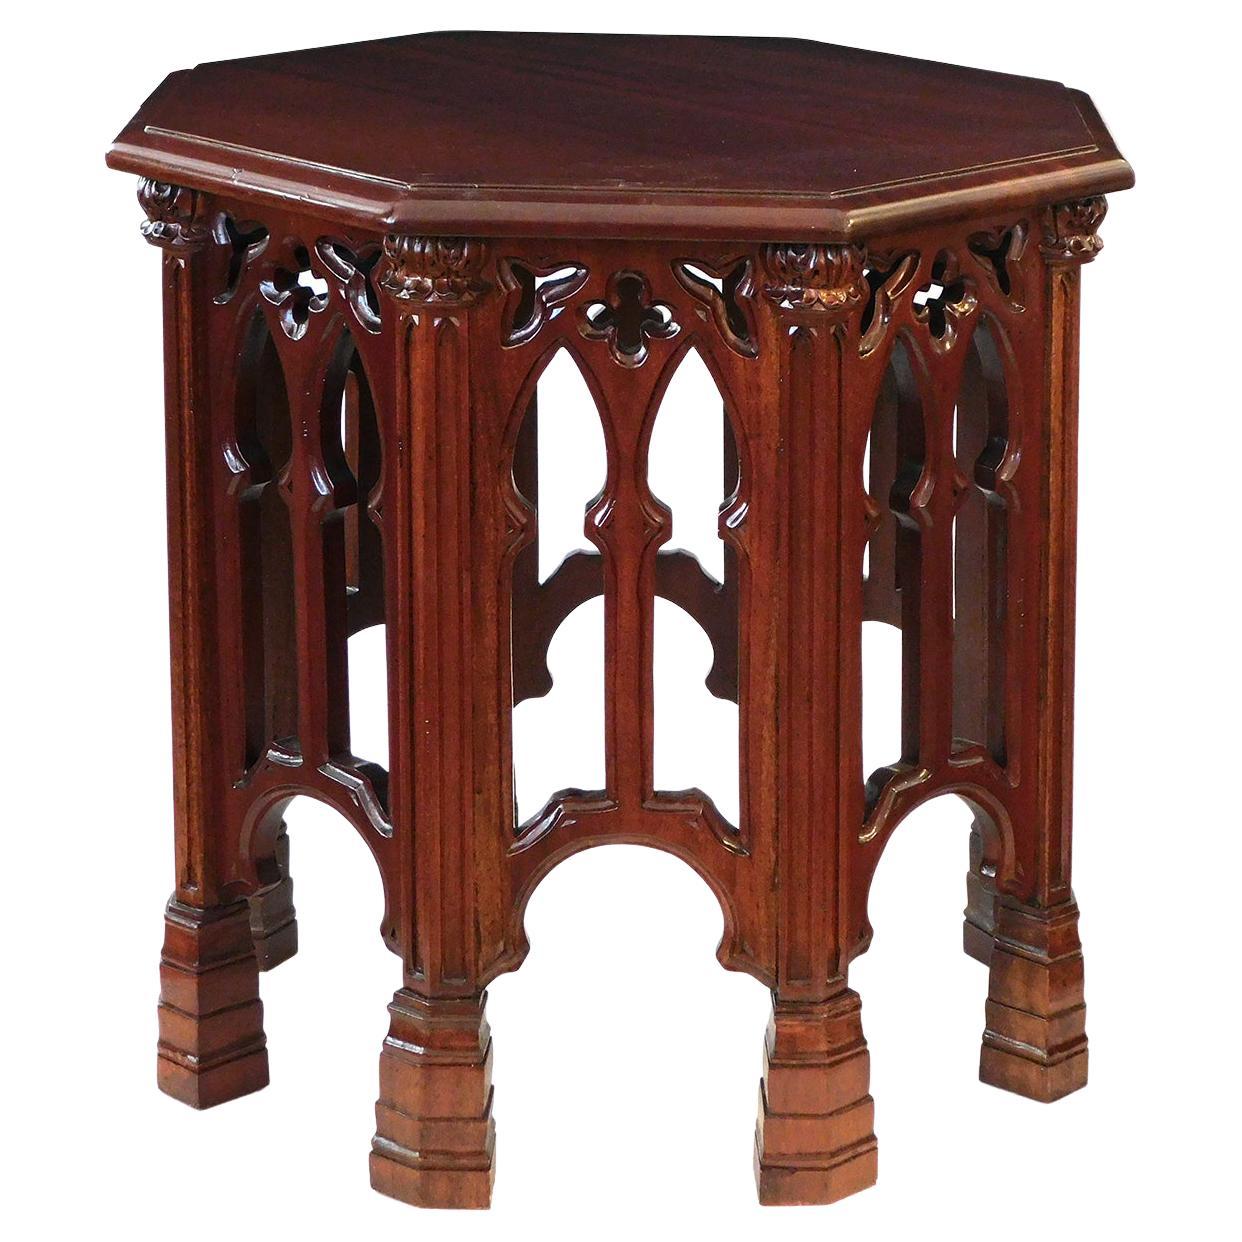 Table d'appoint/table à boissons octogonale de style néo-gothique anglais en acajou massif sculpté